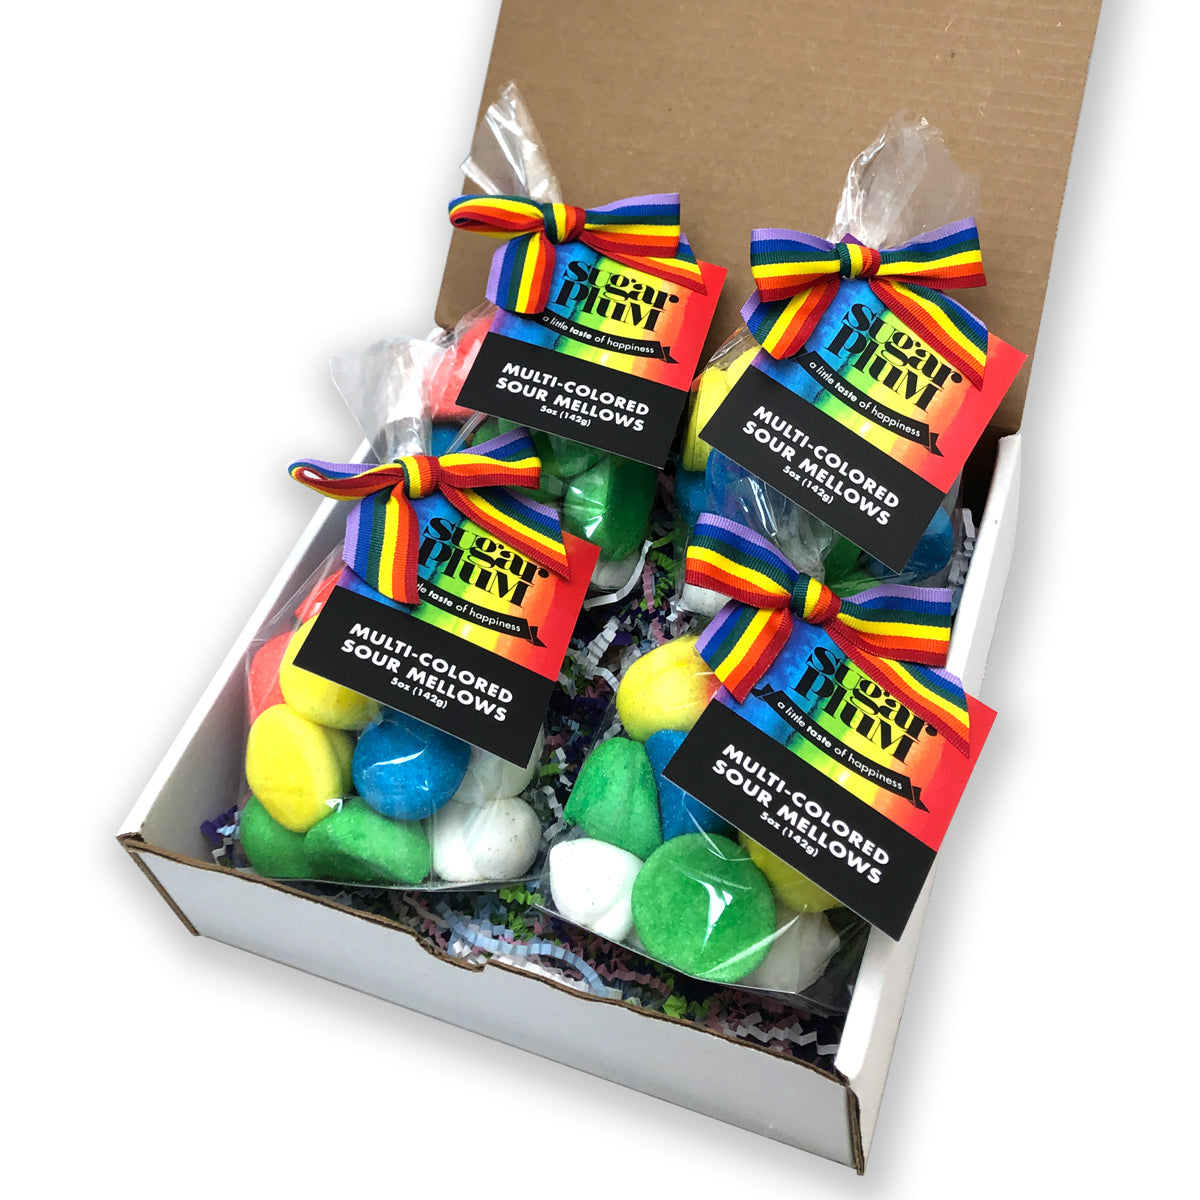 Pride Project Multi-colored Sour Mellows in a box.